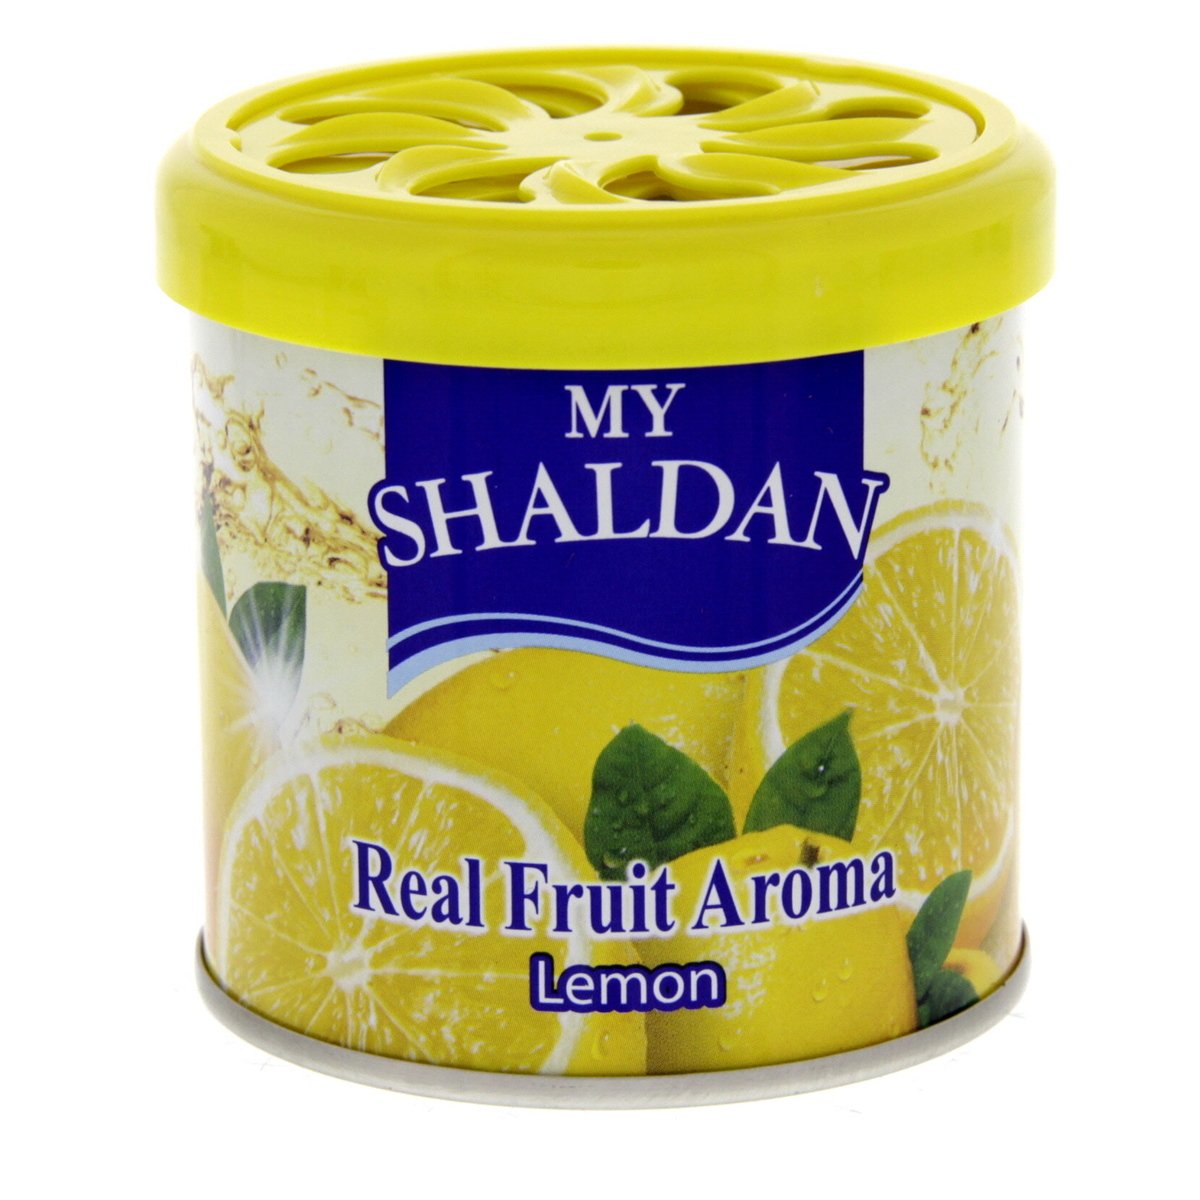 My shaldan Real Fruit Aroma Lemon 80 Gm